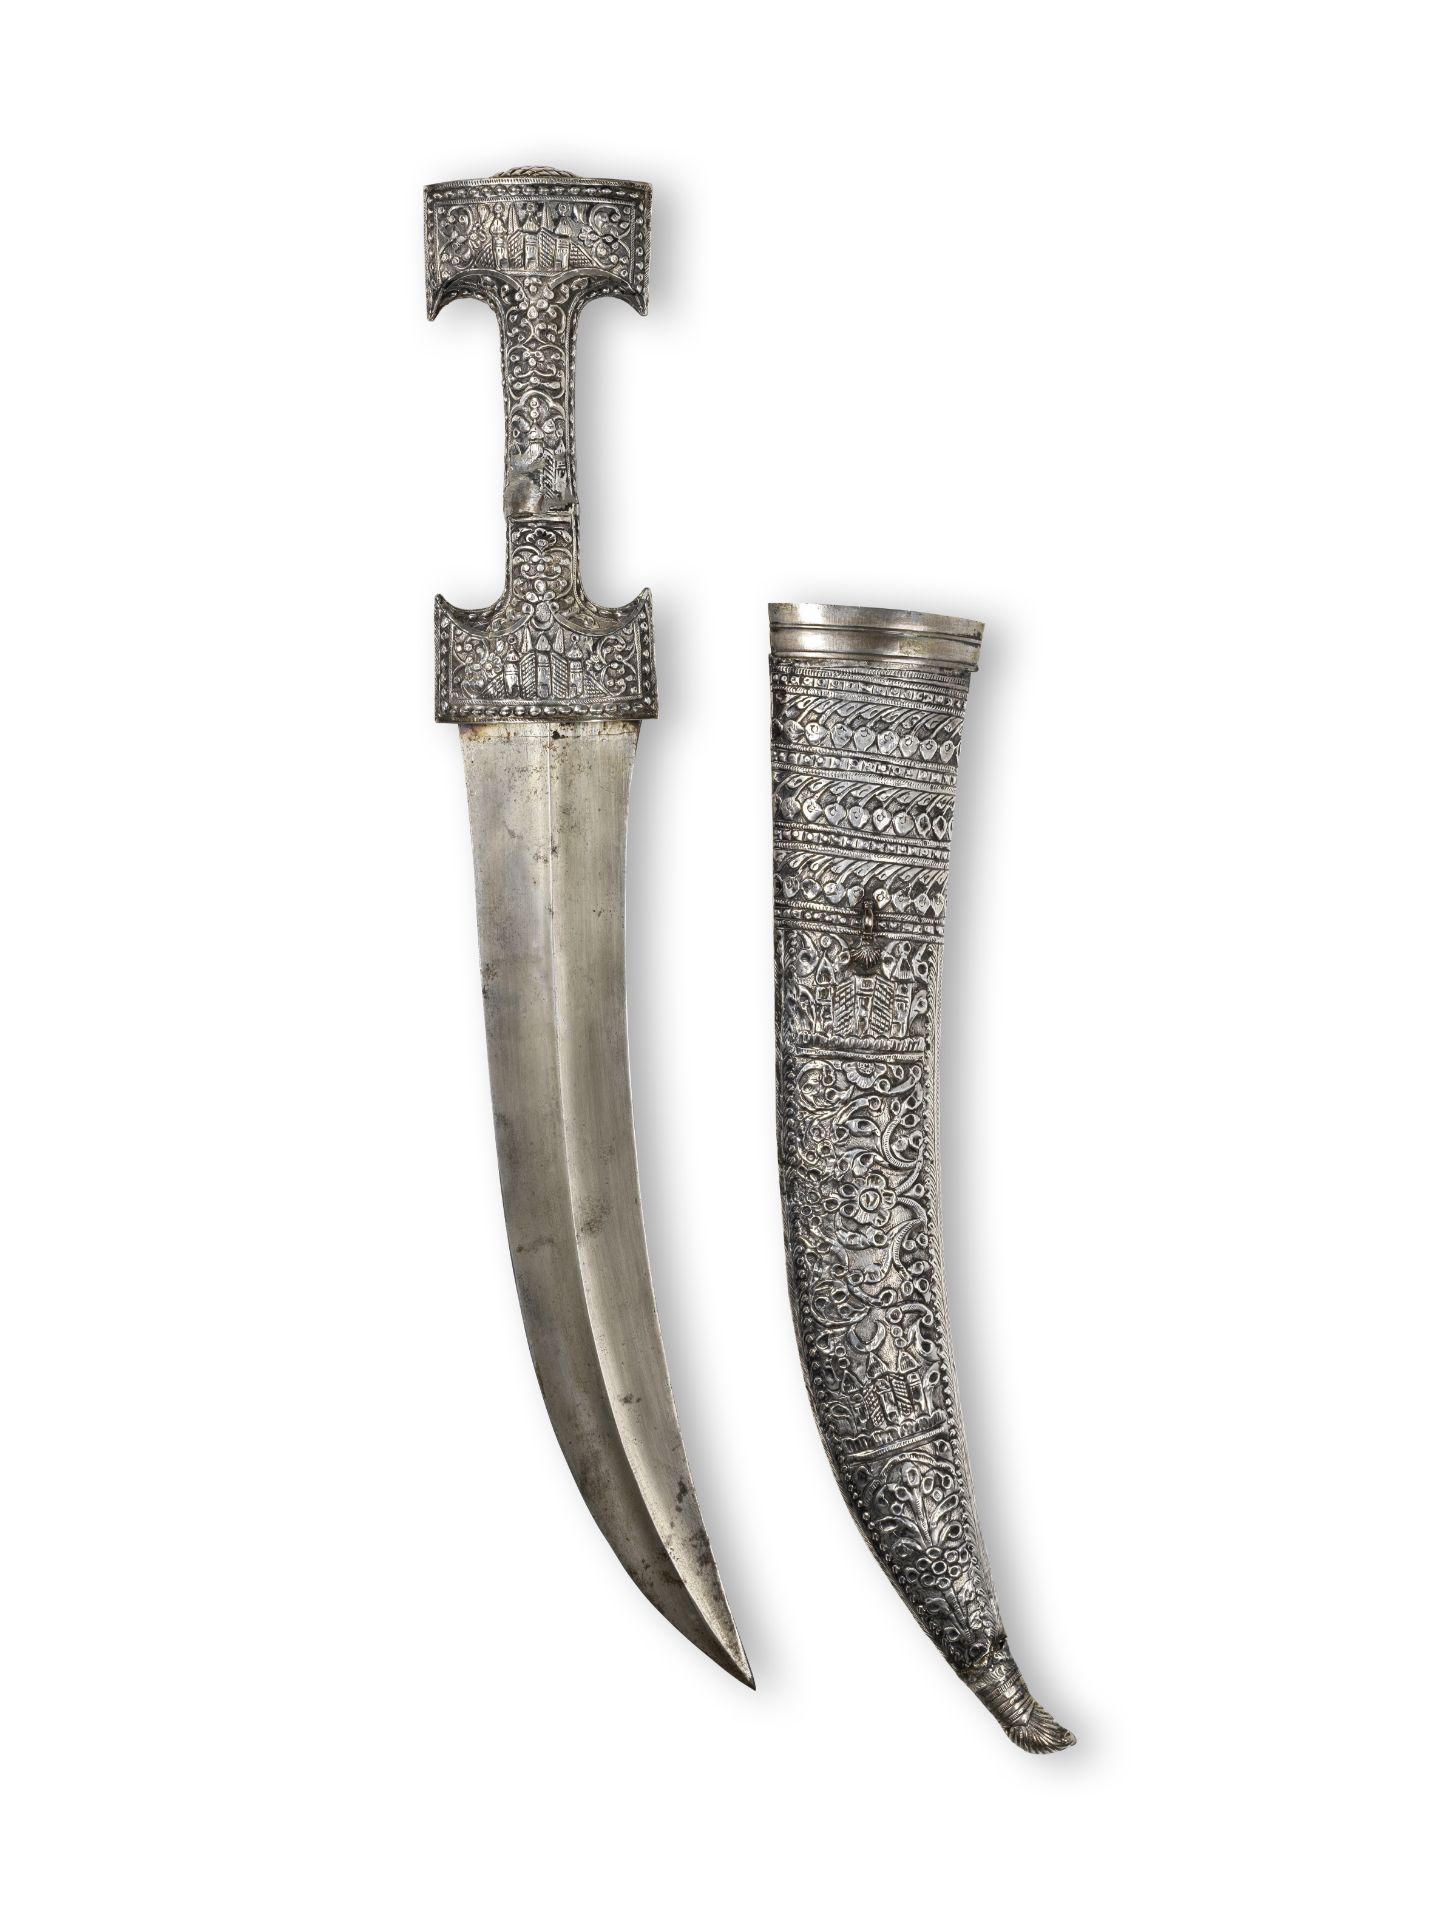 Grande dague Ottomane en acier et argent (jambiyya), Turquie XVIII-XIXe si&#232;cle A large Otto...